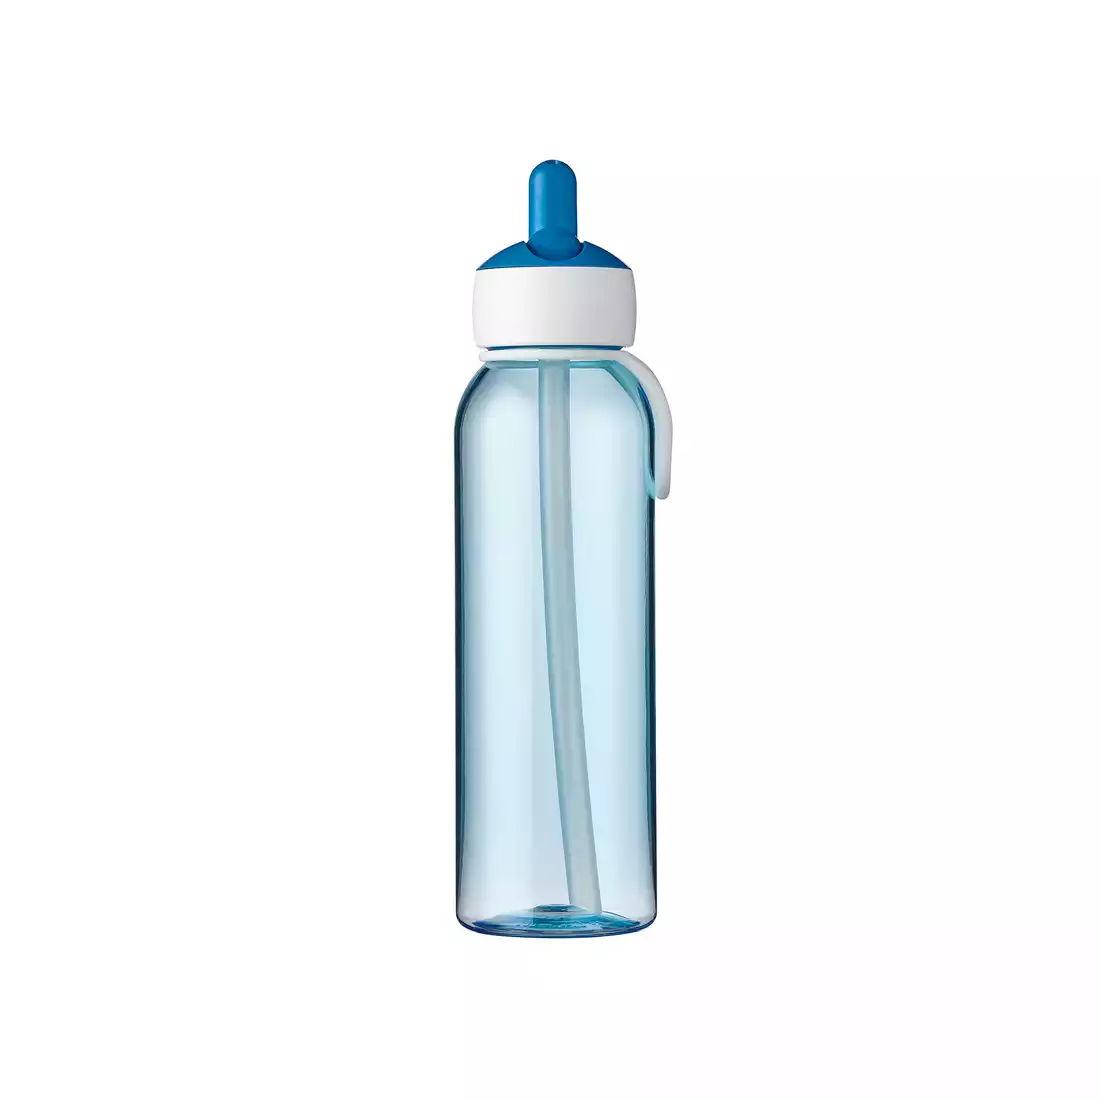 MEPAL FLIP-UP CAMPUS 500 ml wasserflasche, blau